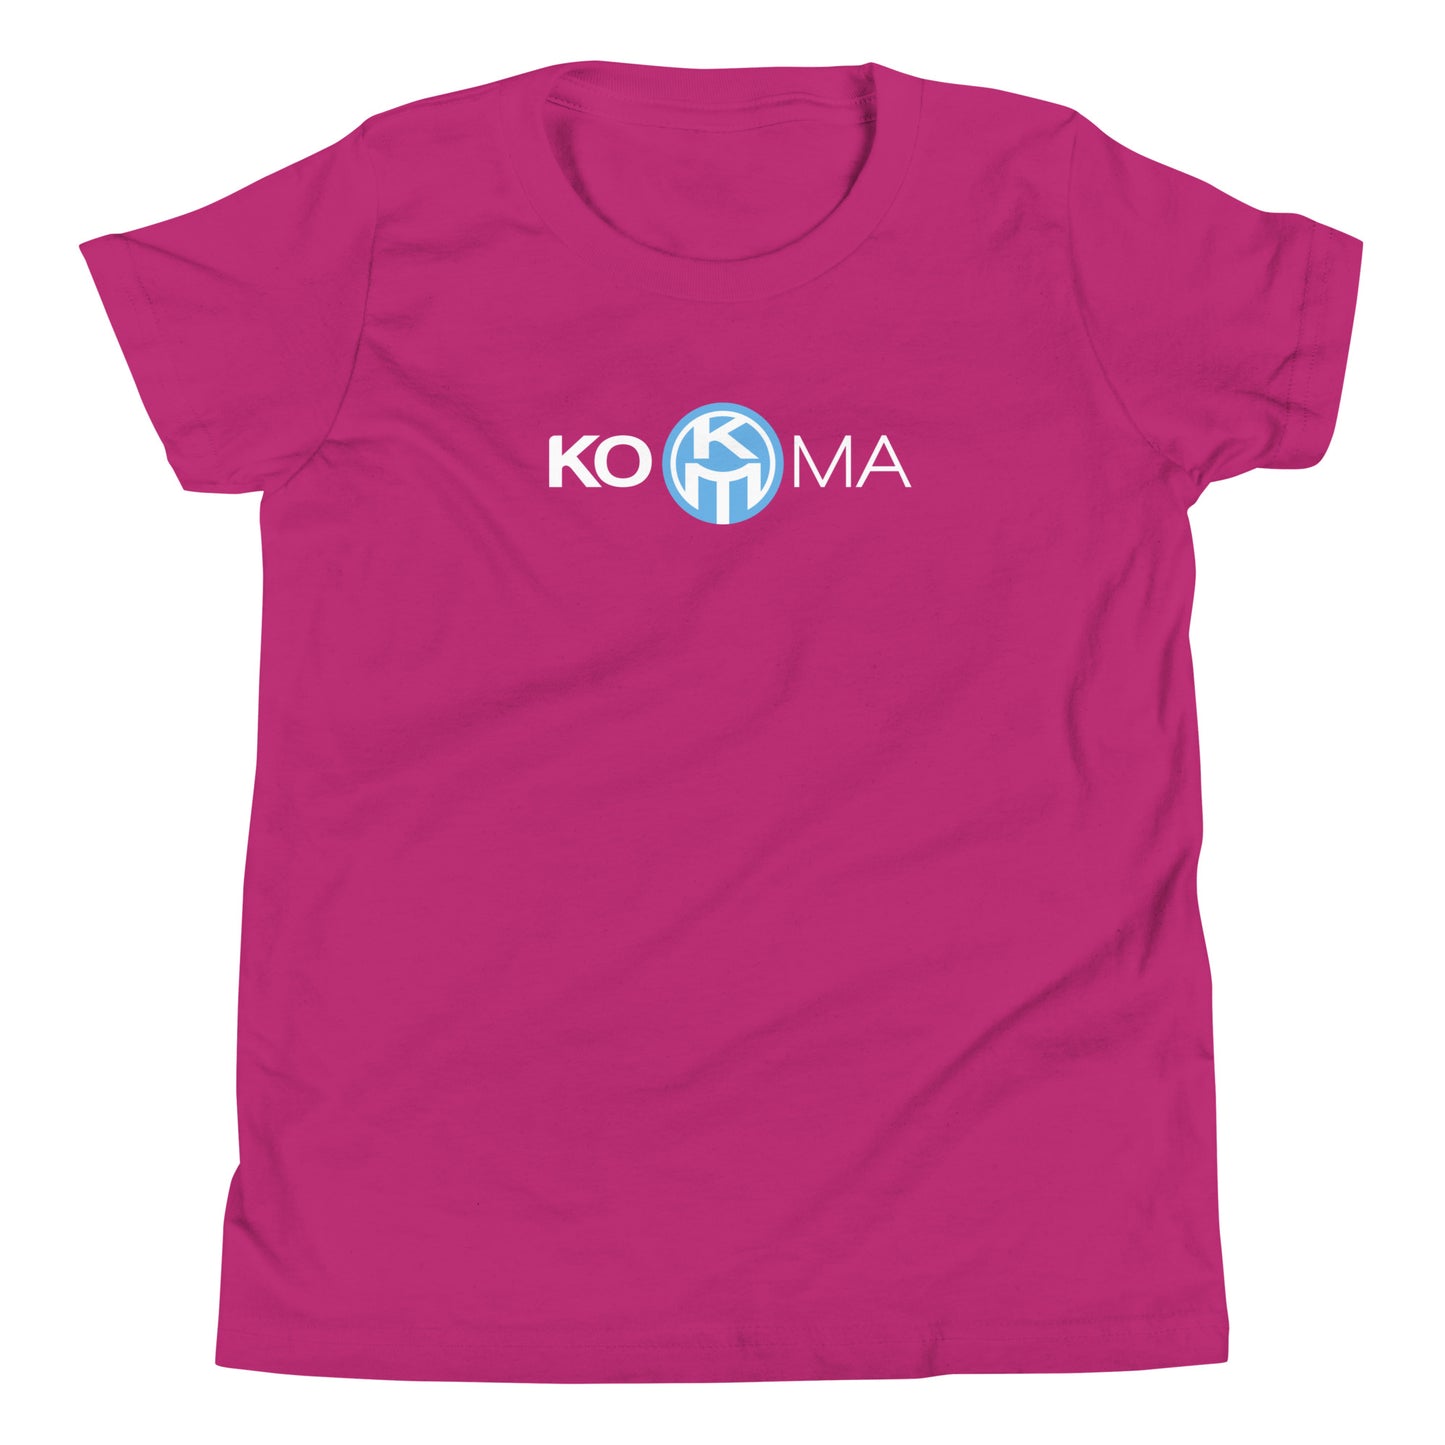 KOMA Youth T-Shirt